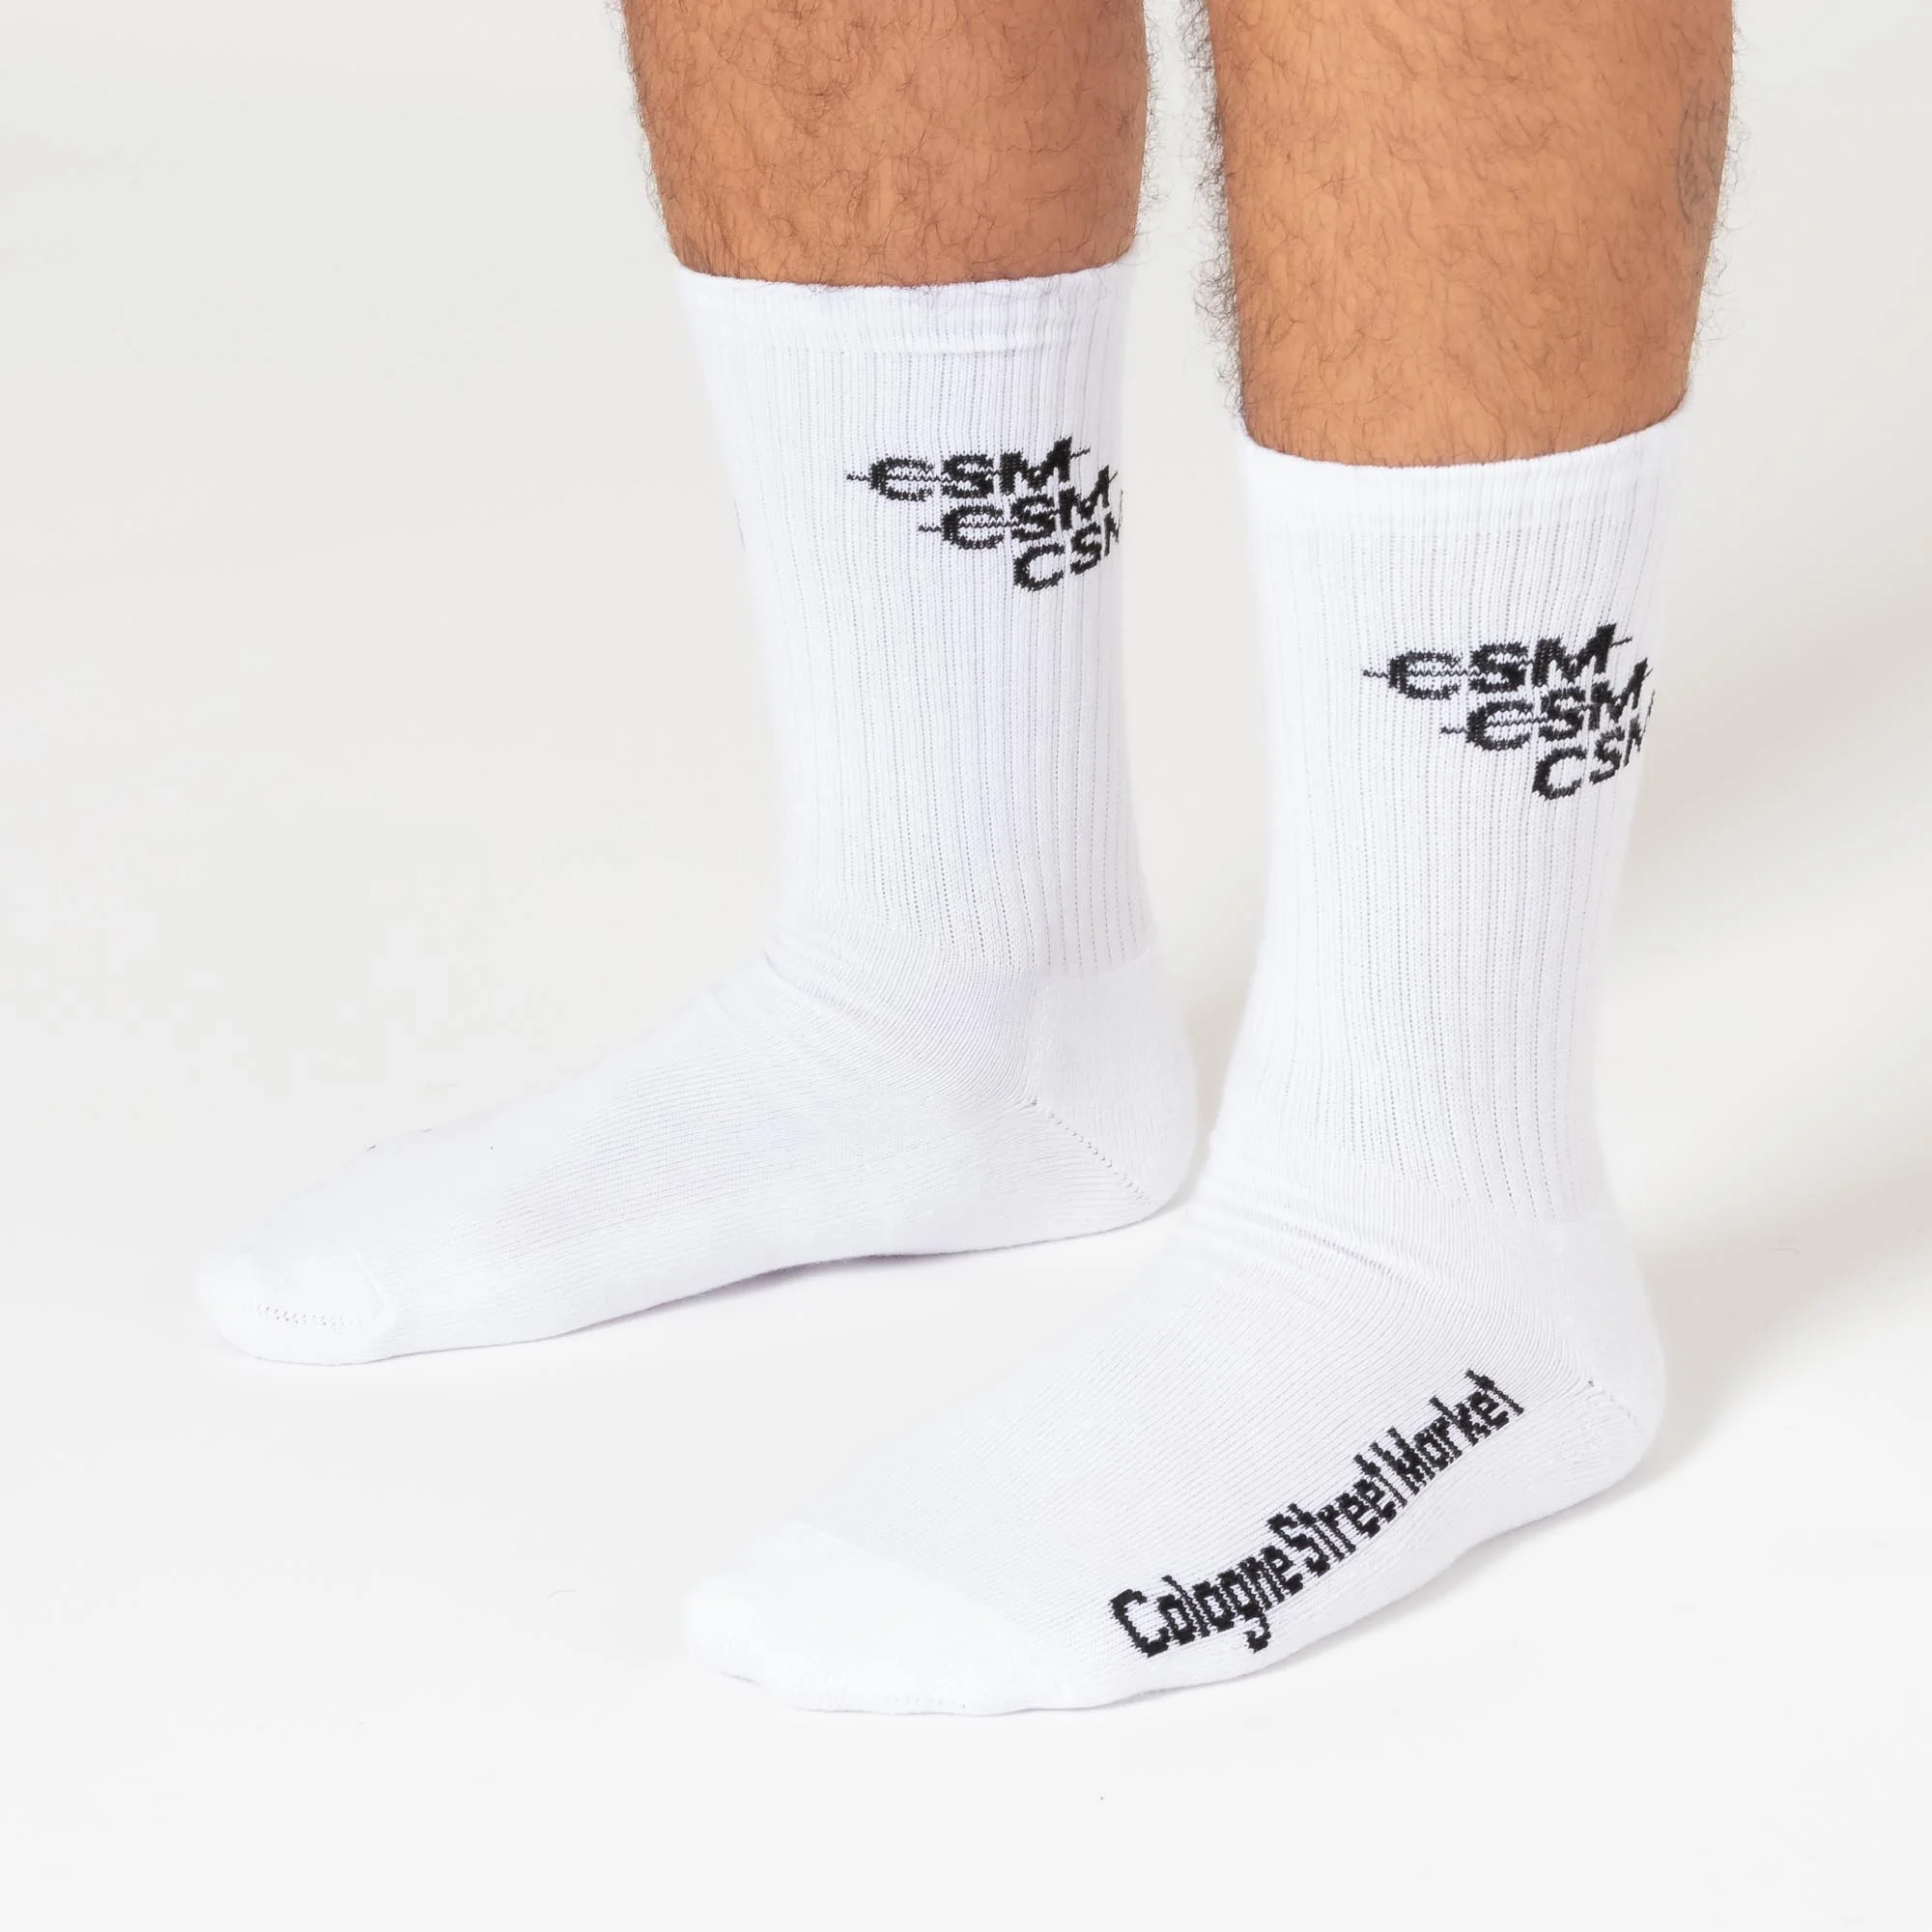 CSM Crew Collection II Socken 1 Kopie